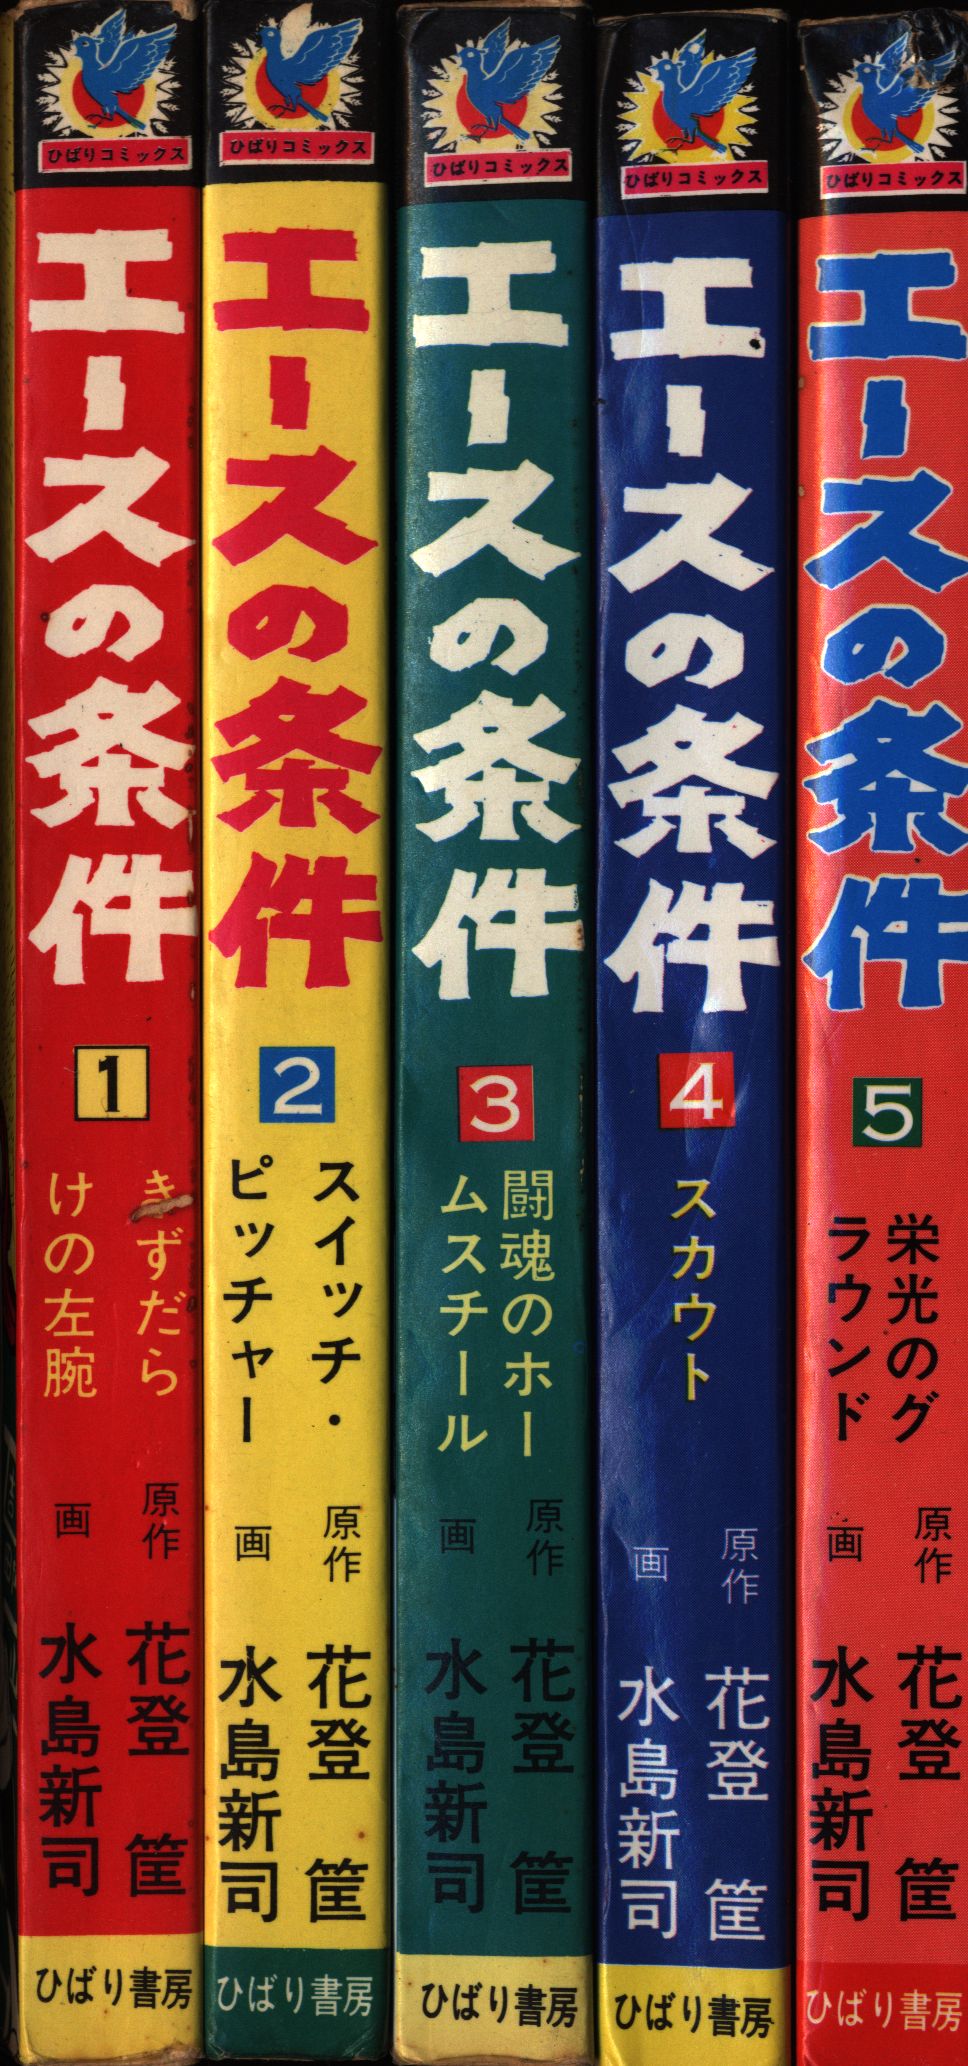 ひばり書房 ひばりヒット(色ロゴ) 水島新司 エースの条件全5巻 セット